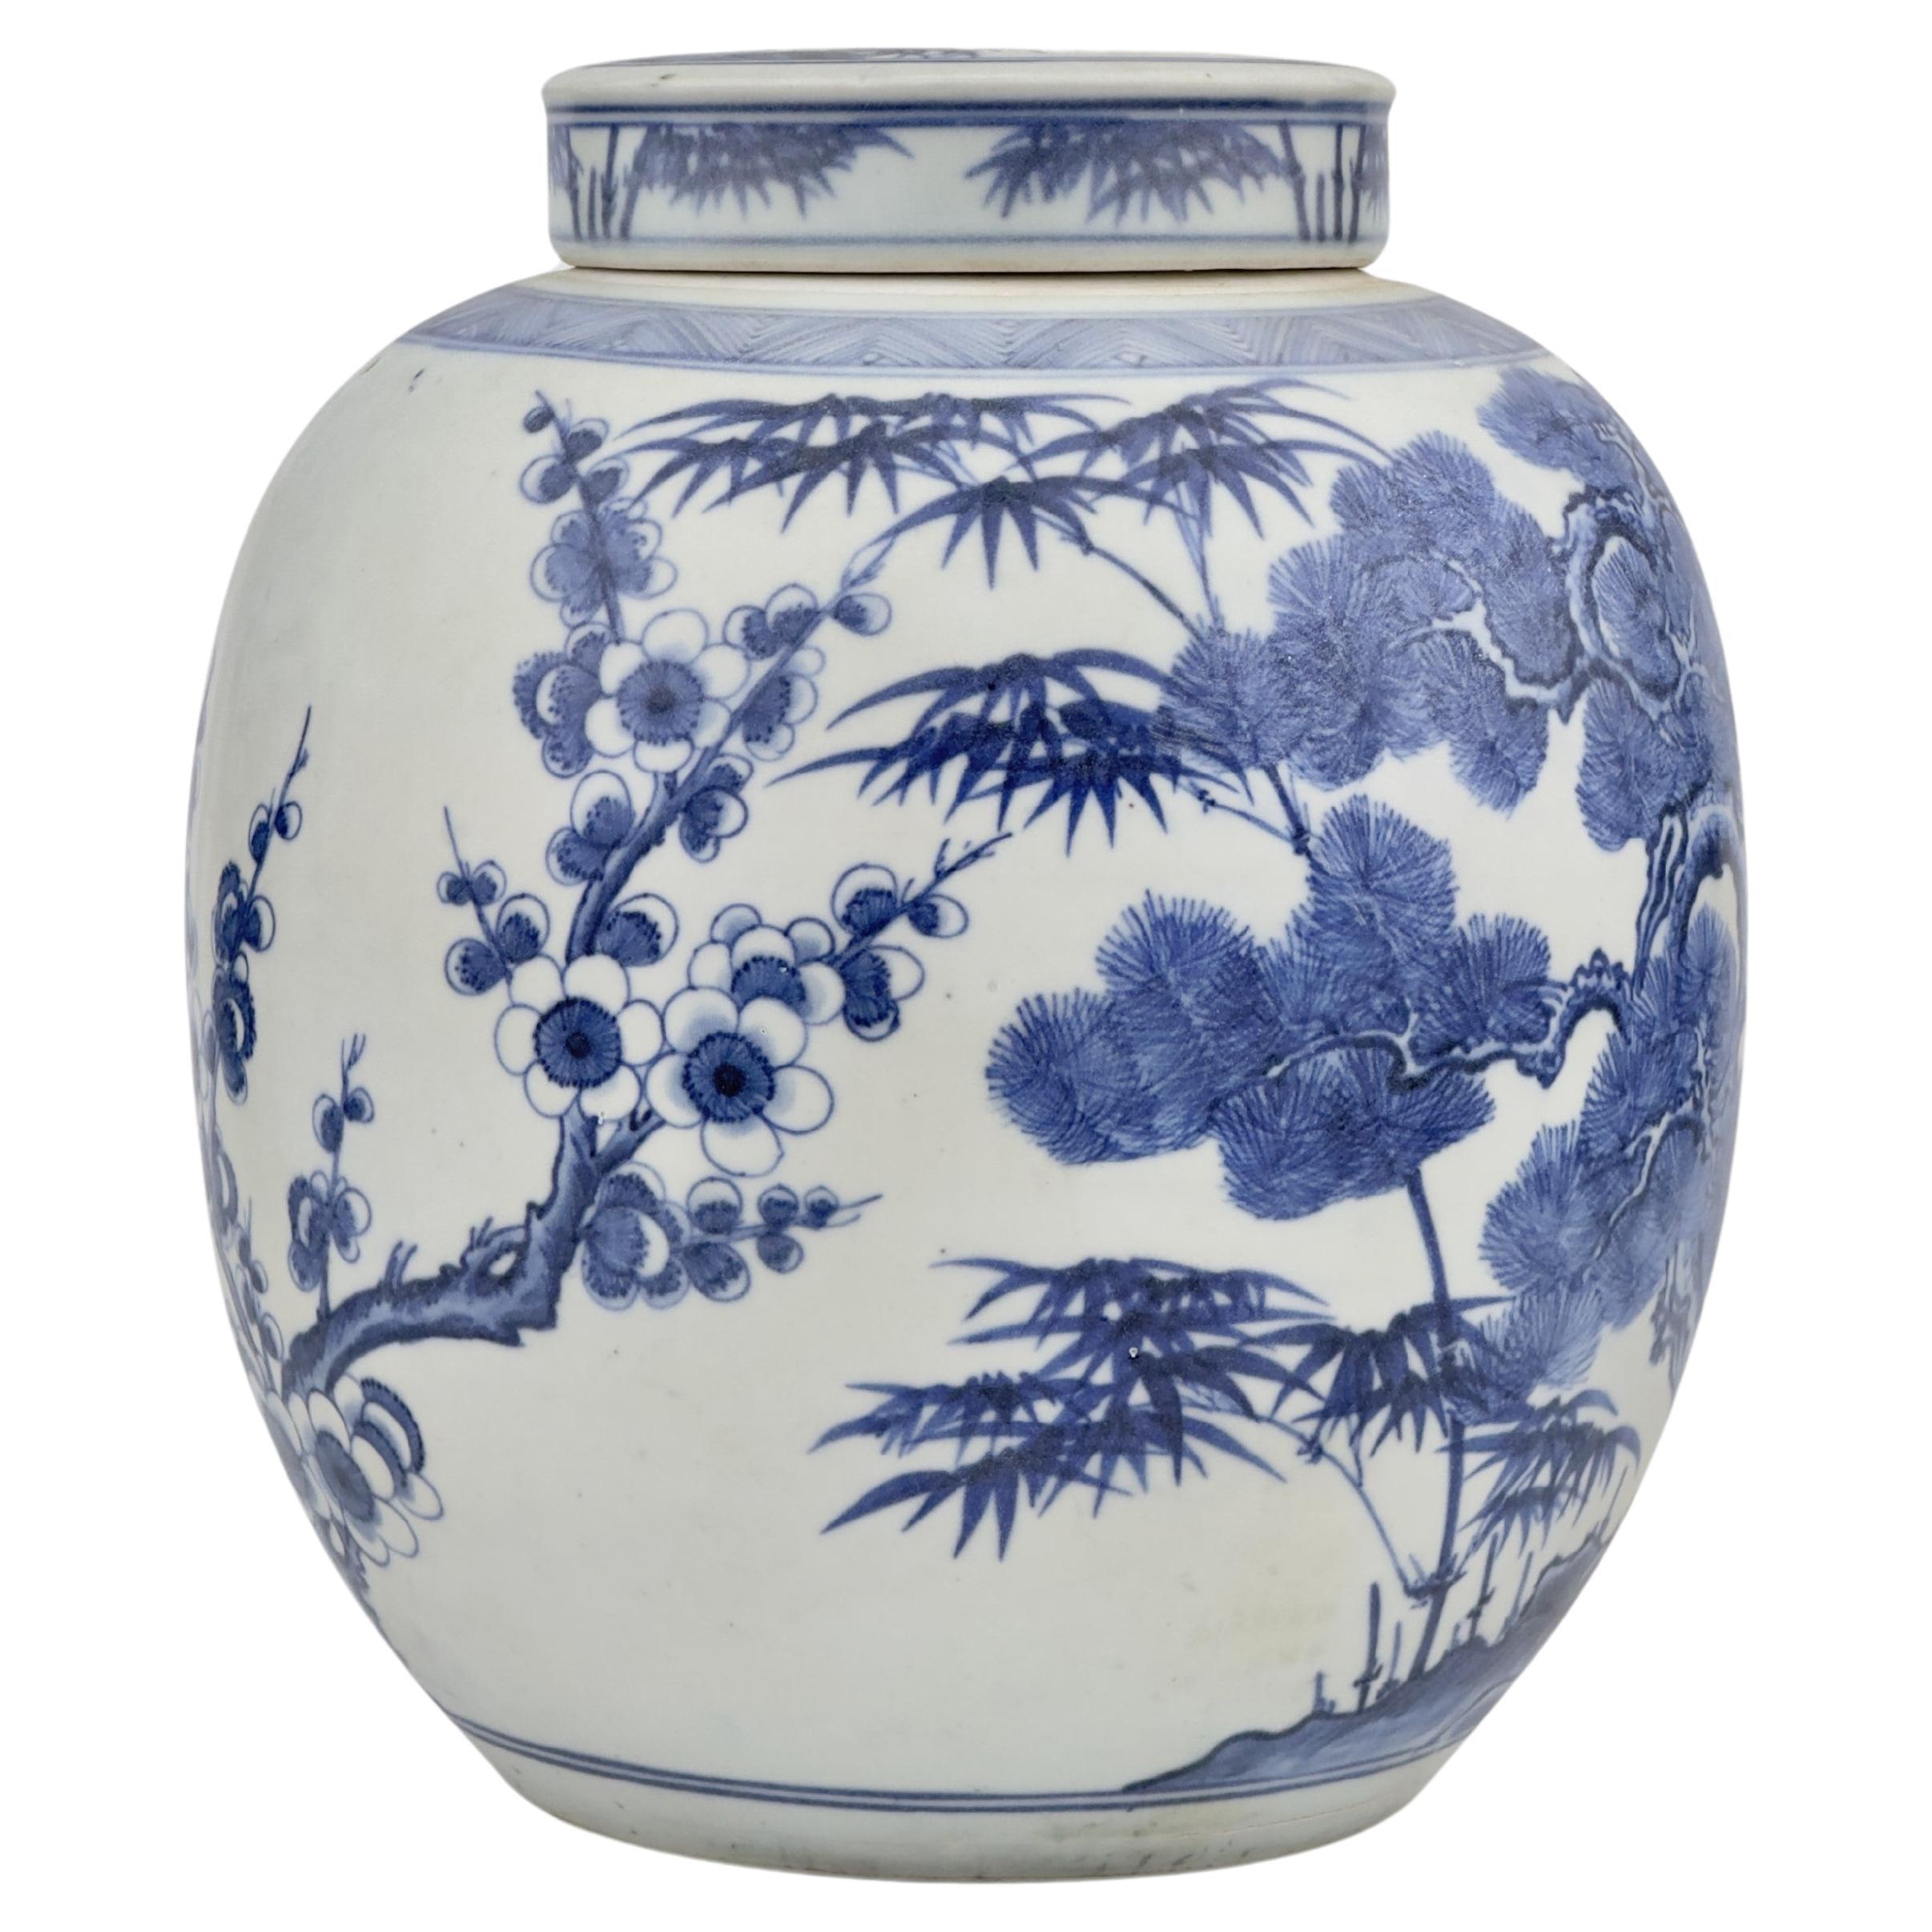 'Three Friends Of Winter' Motif Jar, C 1725, Qing Dynasty, Yongzheng Era For Sale